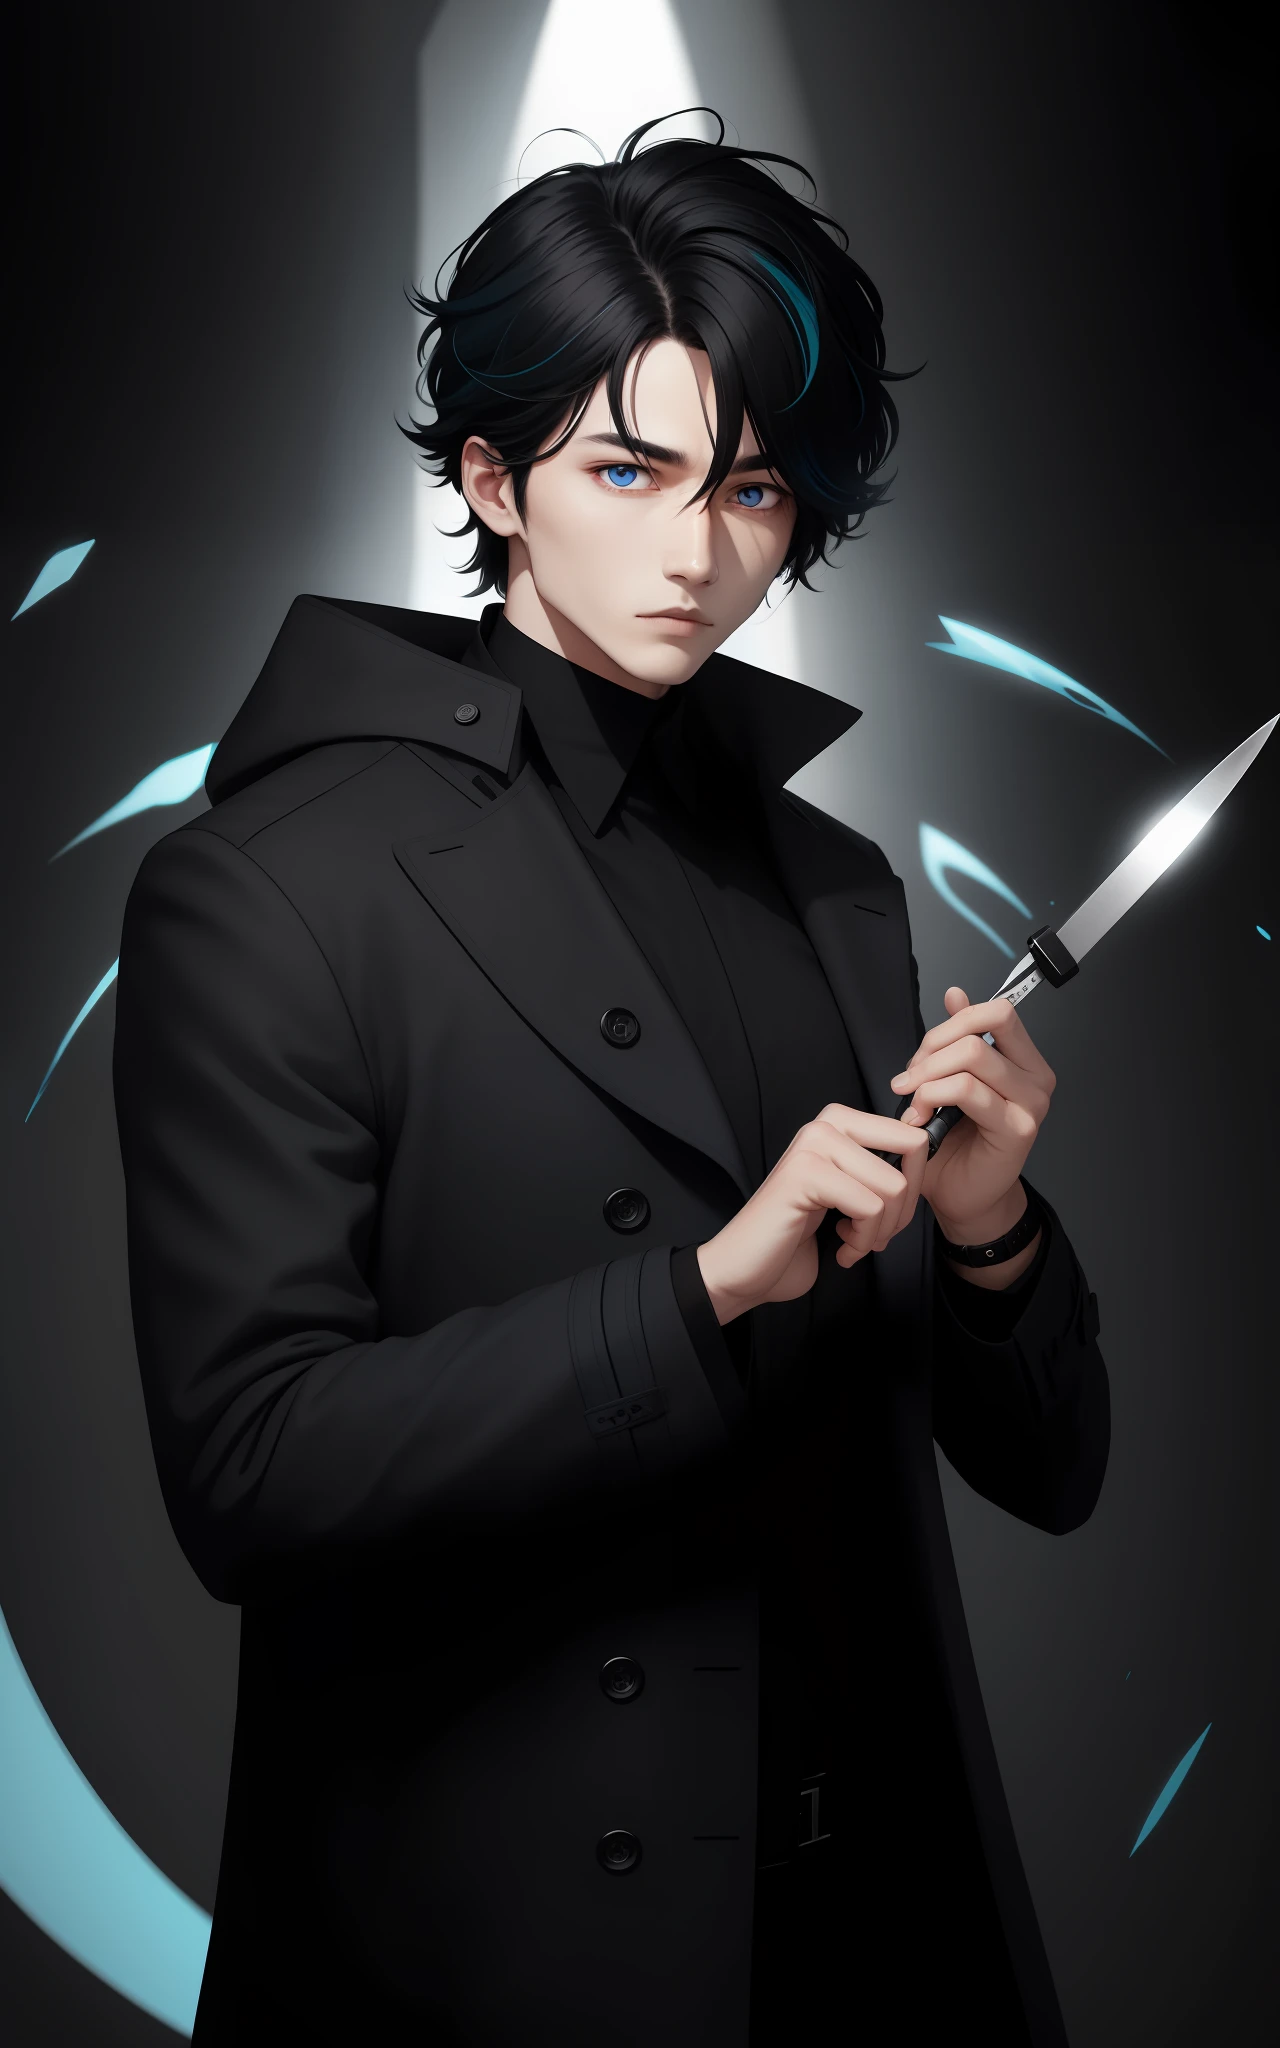 Homem vestindo cachecol preto, segurando um bisturi, cabelo social preto com mechas brancas, olhos bicolores, brigando, aura azul ao redor, vestindo casaco